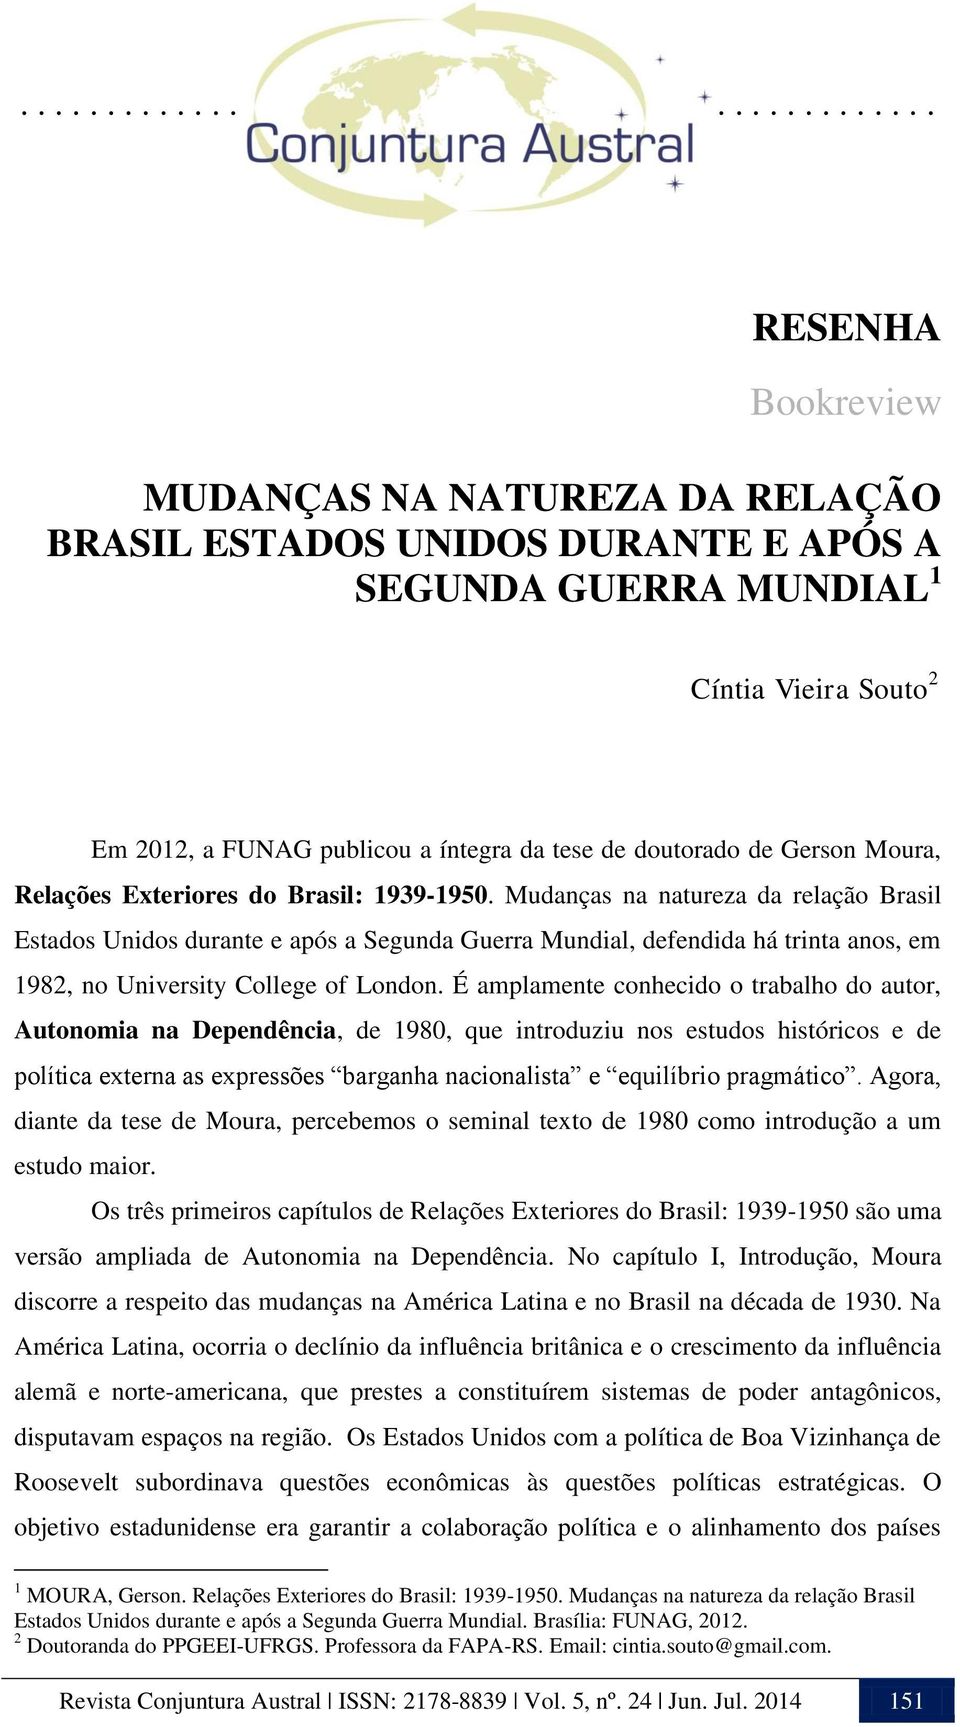 Mudanças na natureza da relação Brasil Estados Unidos durante e após a Segunda Guerra Mundial, defendida há trinta anos, em 1982, no University College of London.